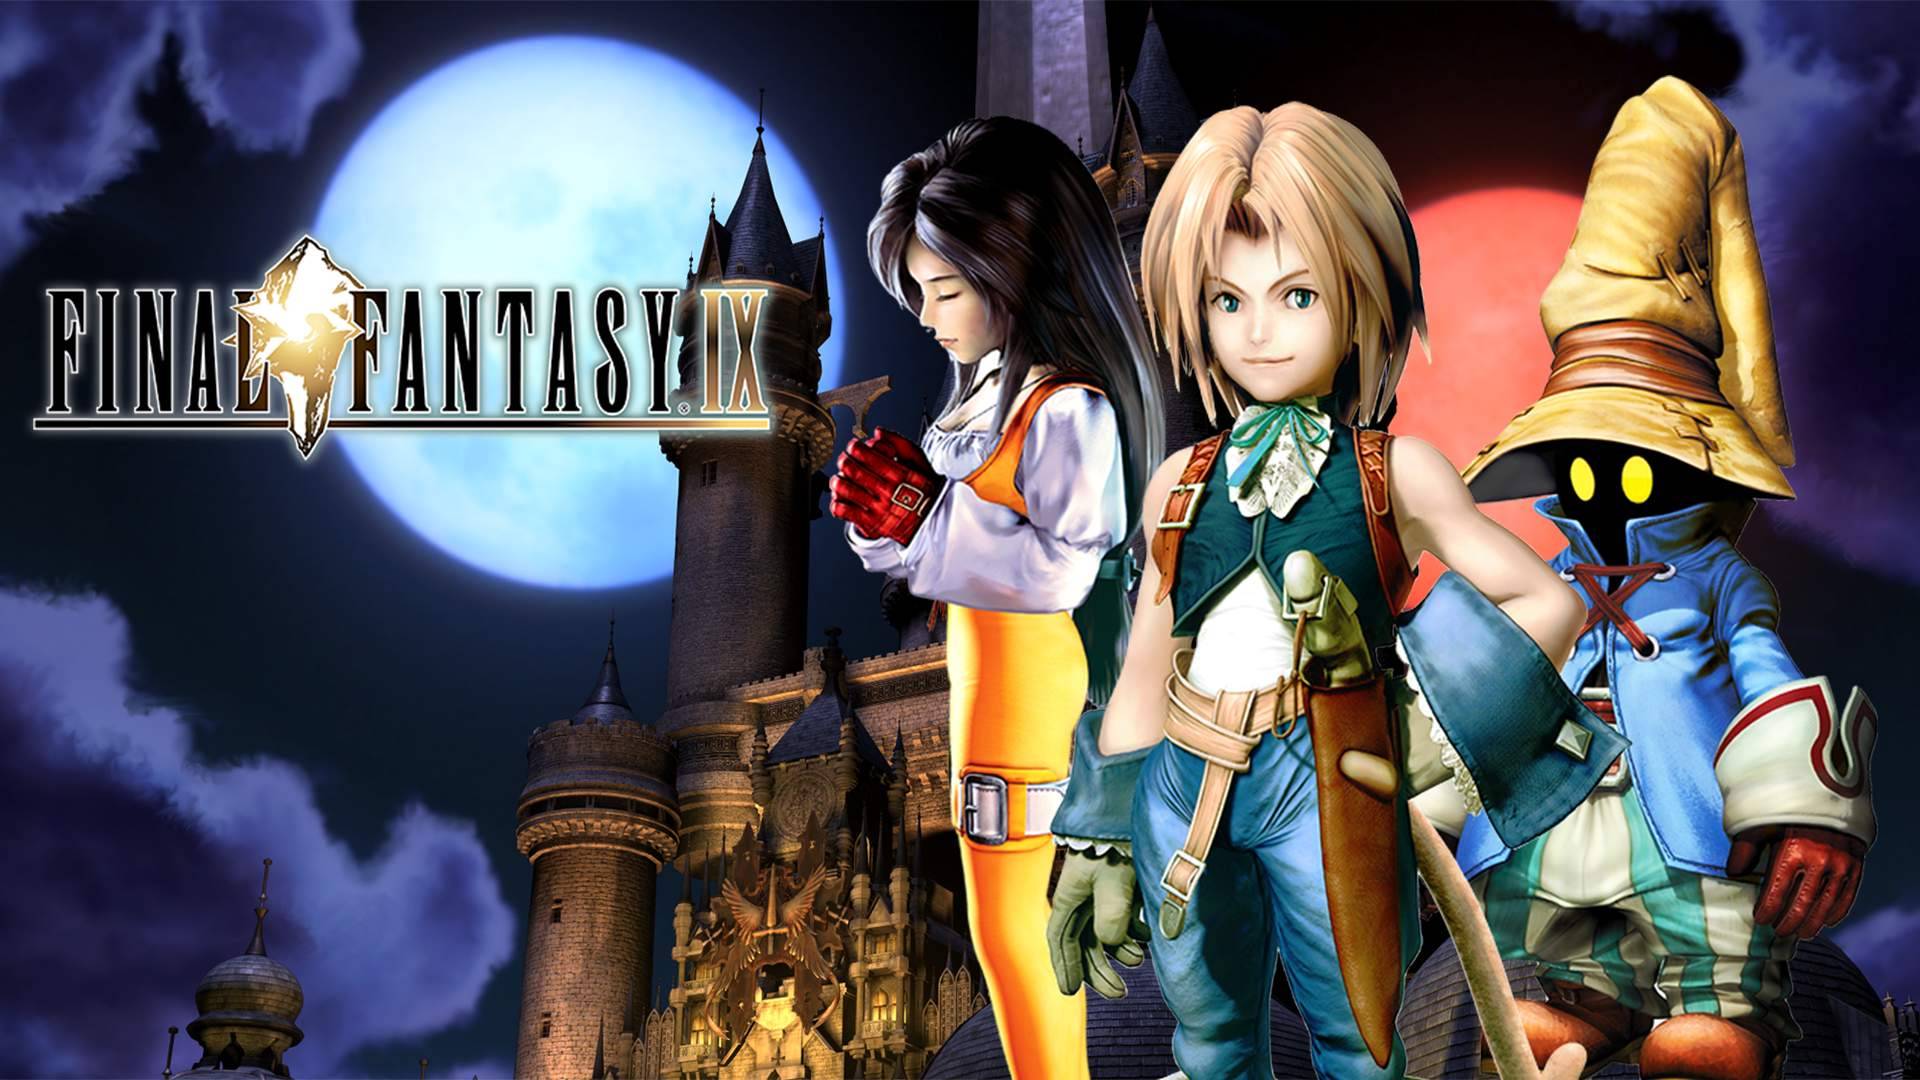 ПОСЛЕДНЯЯ ФАНТАЗИЯ | Final Fantasy IX #3